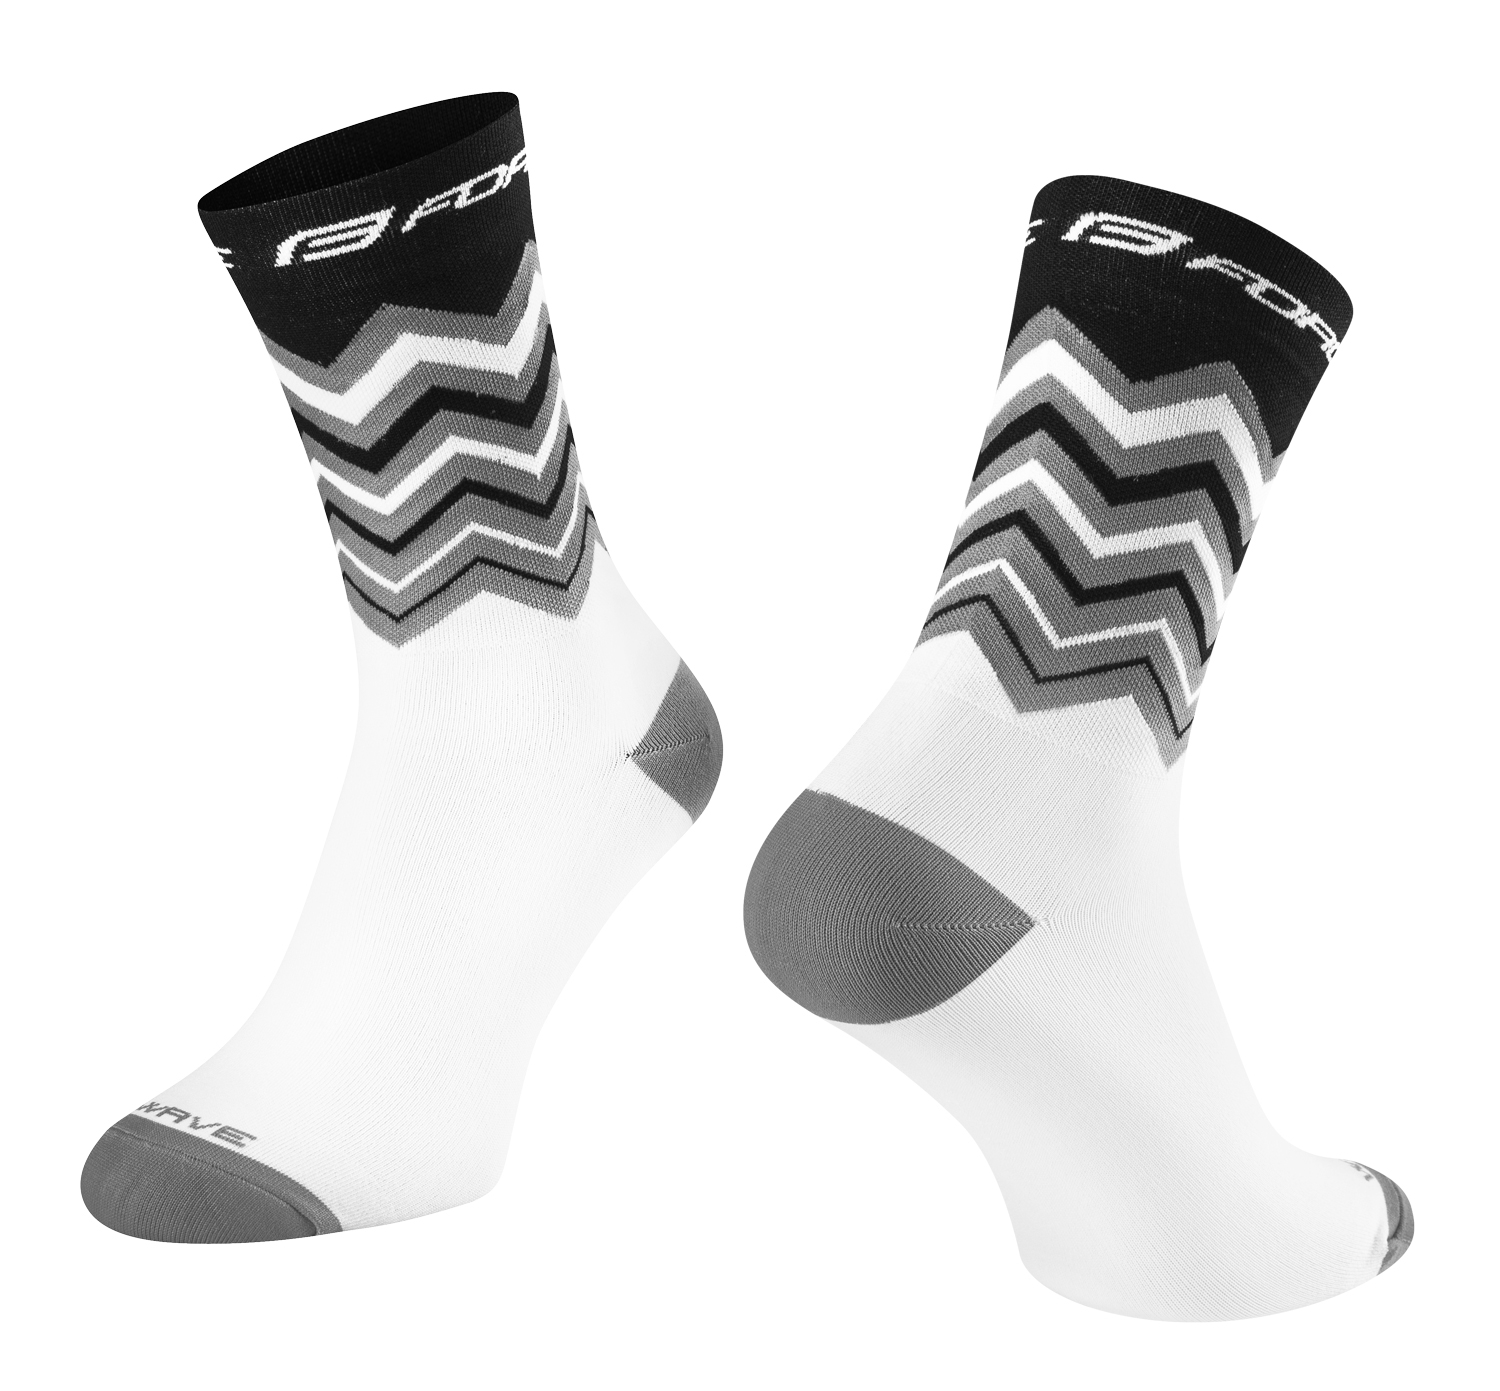 ponožky FORCE WAVE, černo-bílé S-M/36-41